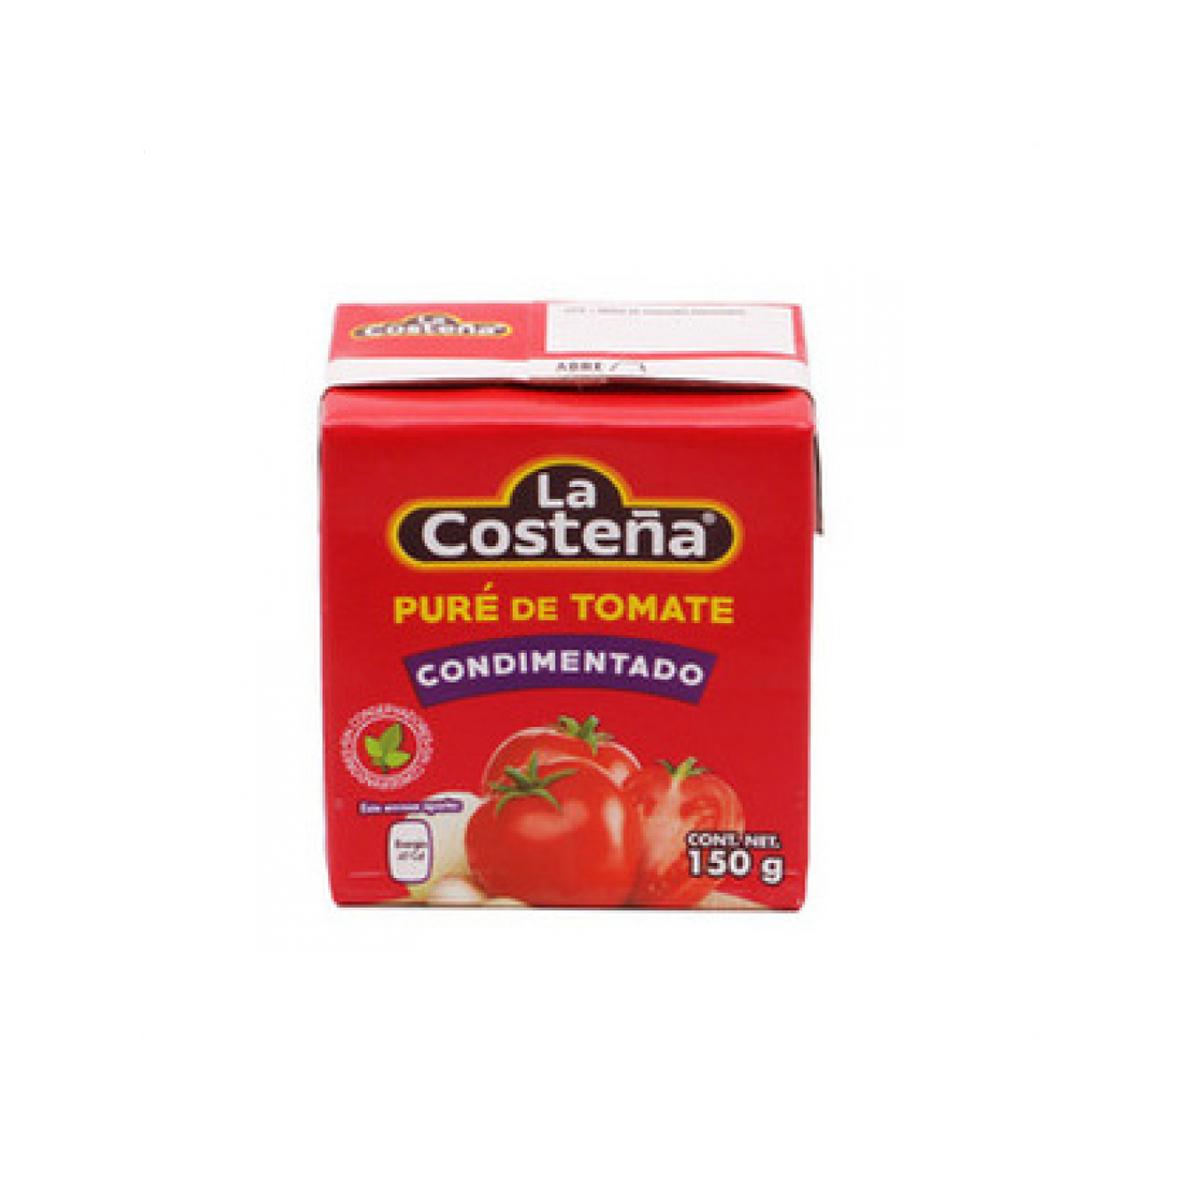 Pure de tomate condimentado La Costeña (150 g / 5.29 oz) 